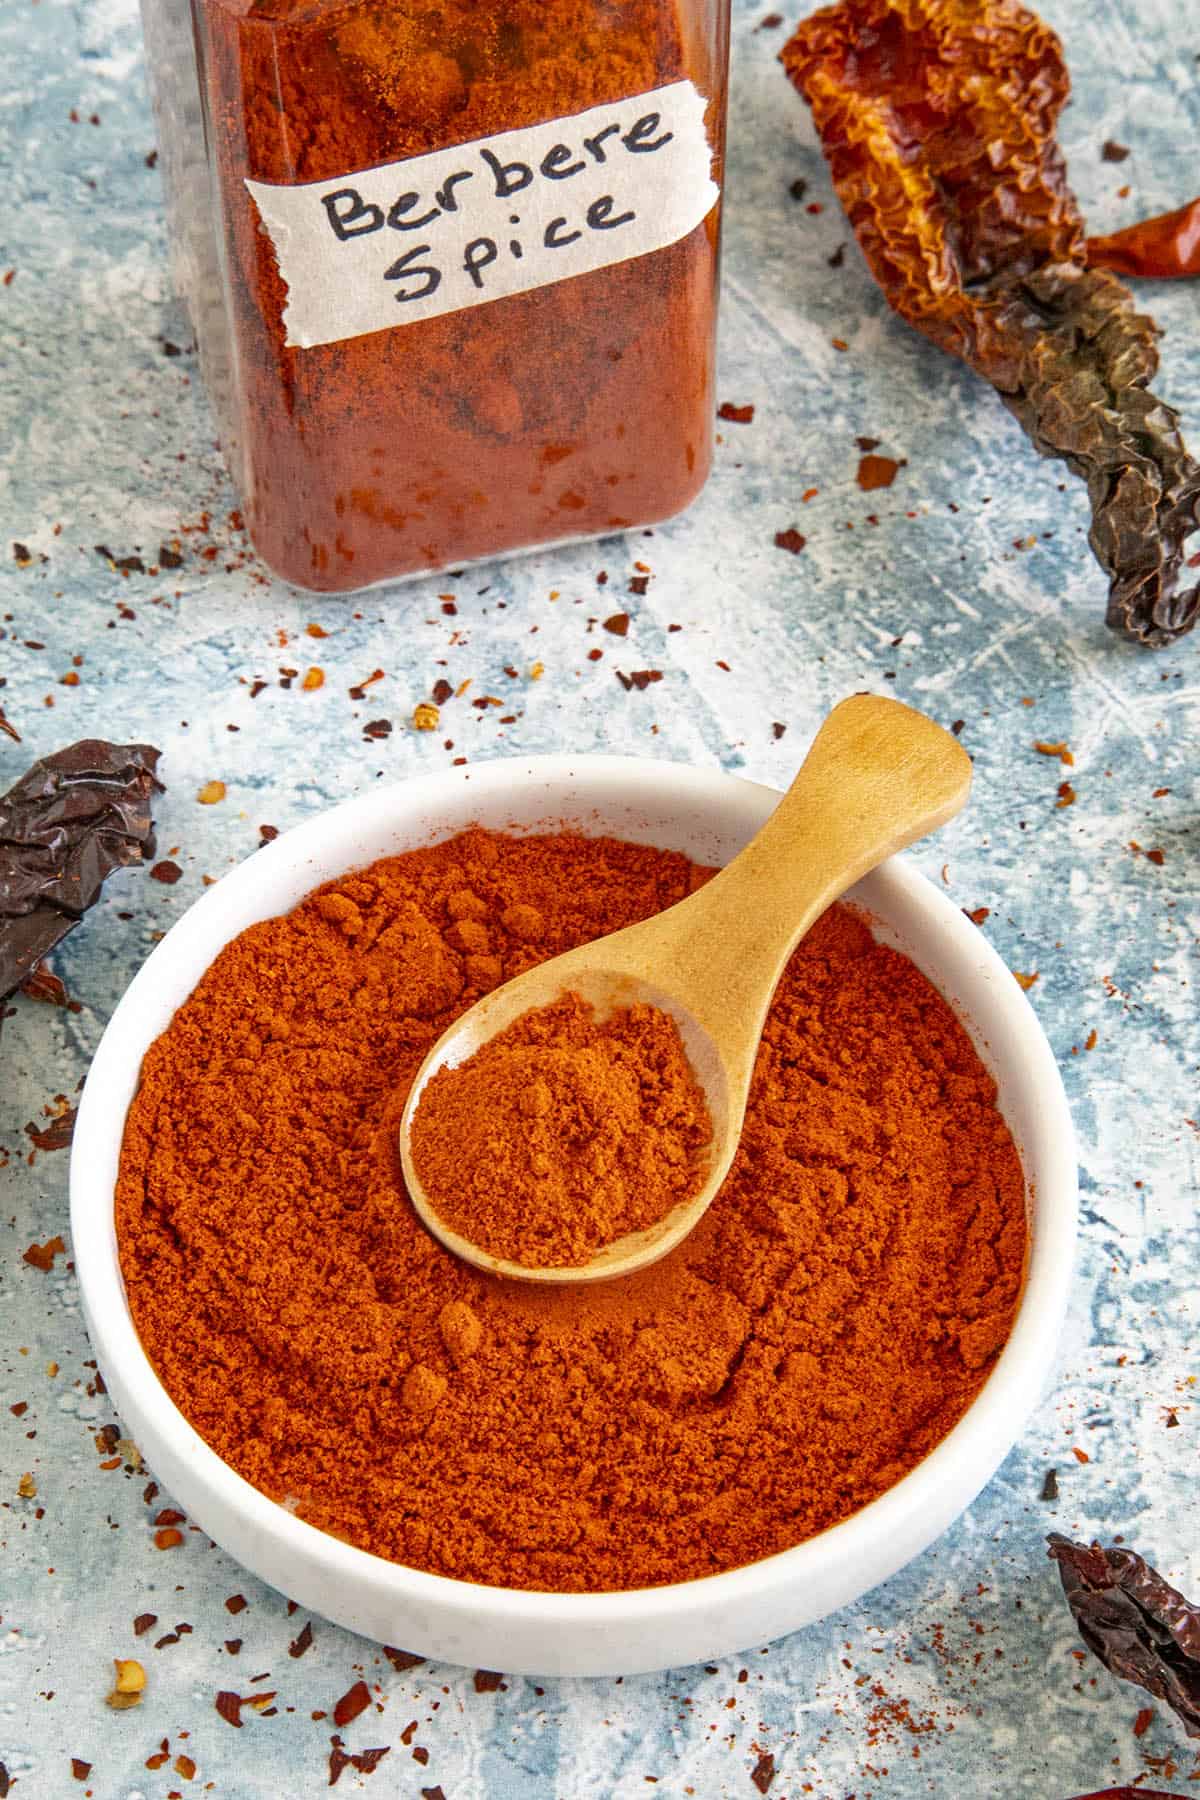 Berbere Spice Recipe (Ethiopian Spice Mix)